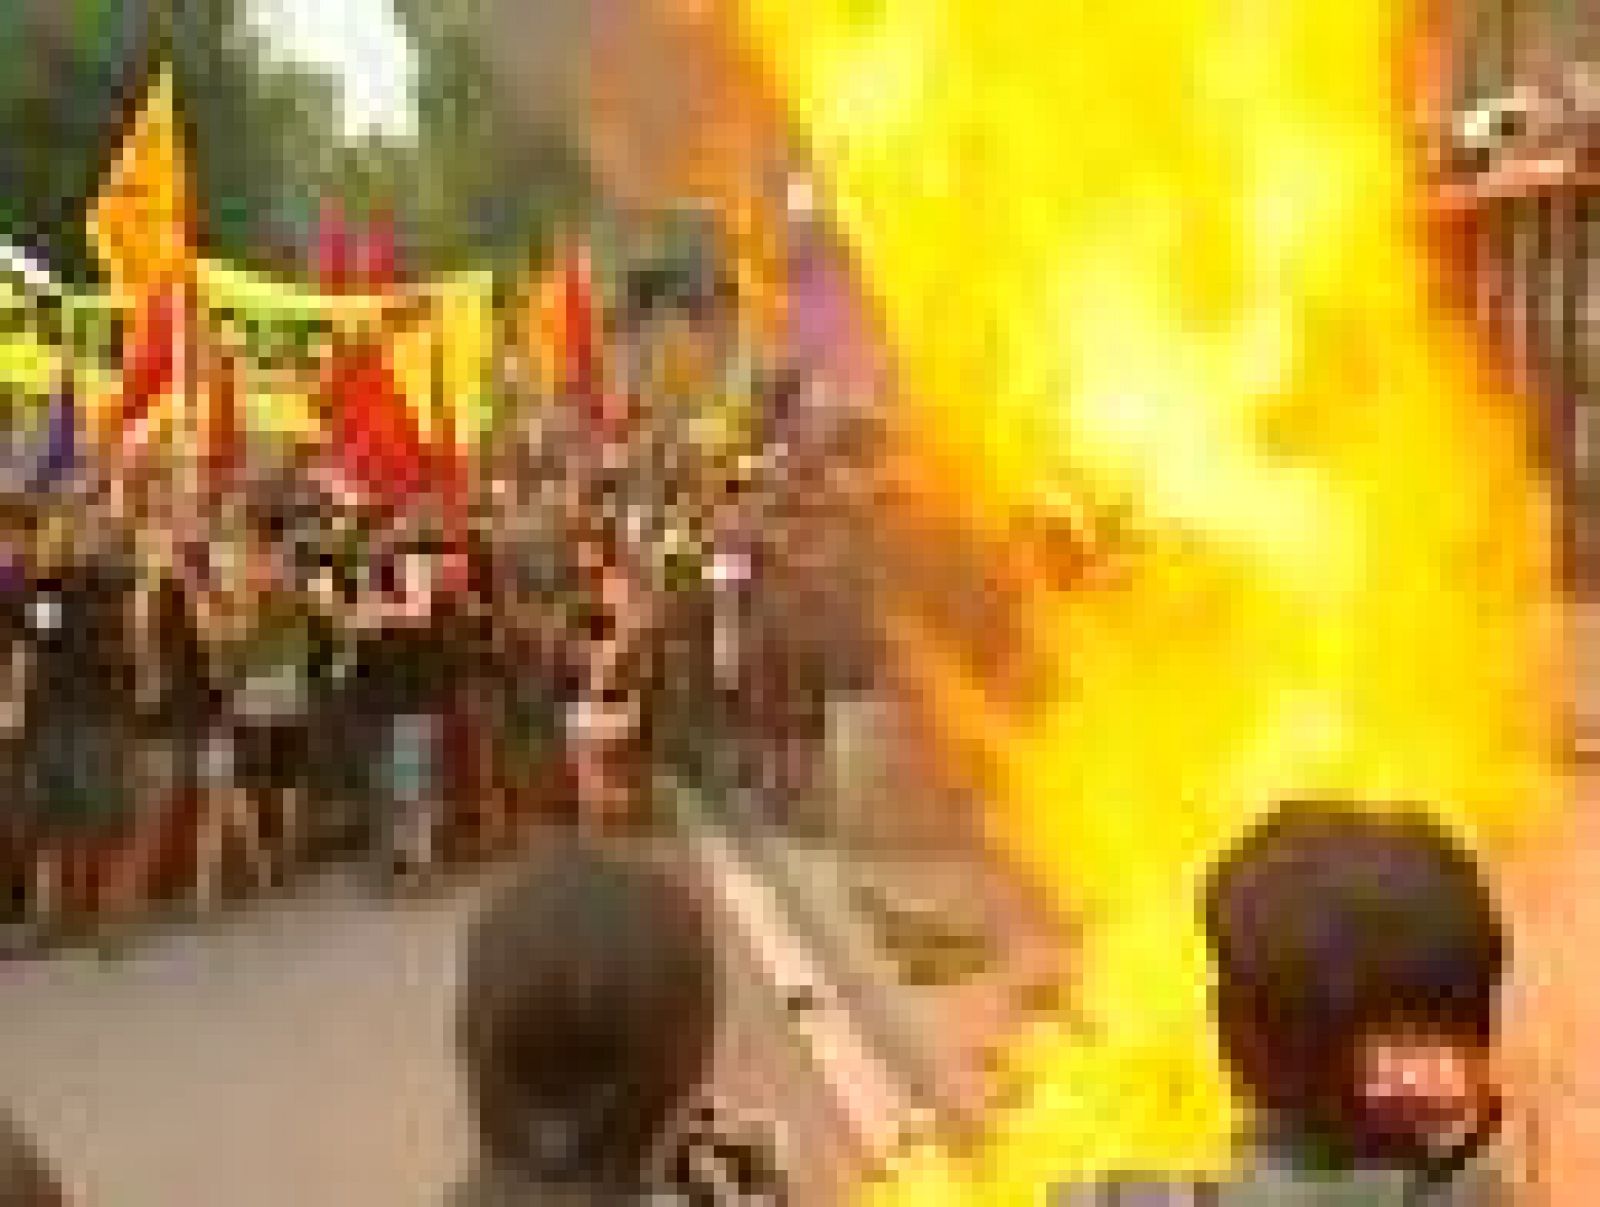   Un grupo de encapuchados ha irrumpido en la manifestación  independentista de Barcelona que se celebra con motivo de la Diada y  ha quemado una bandera española.  